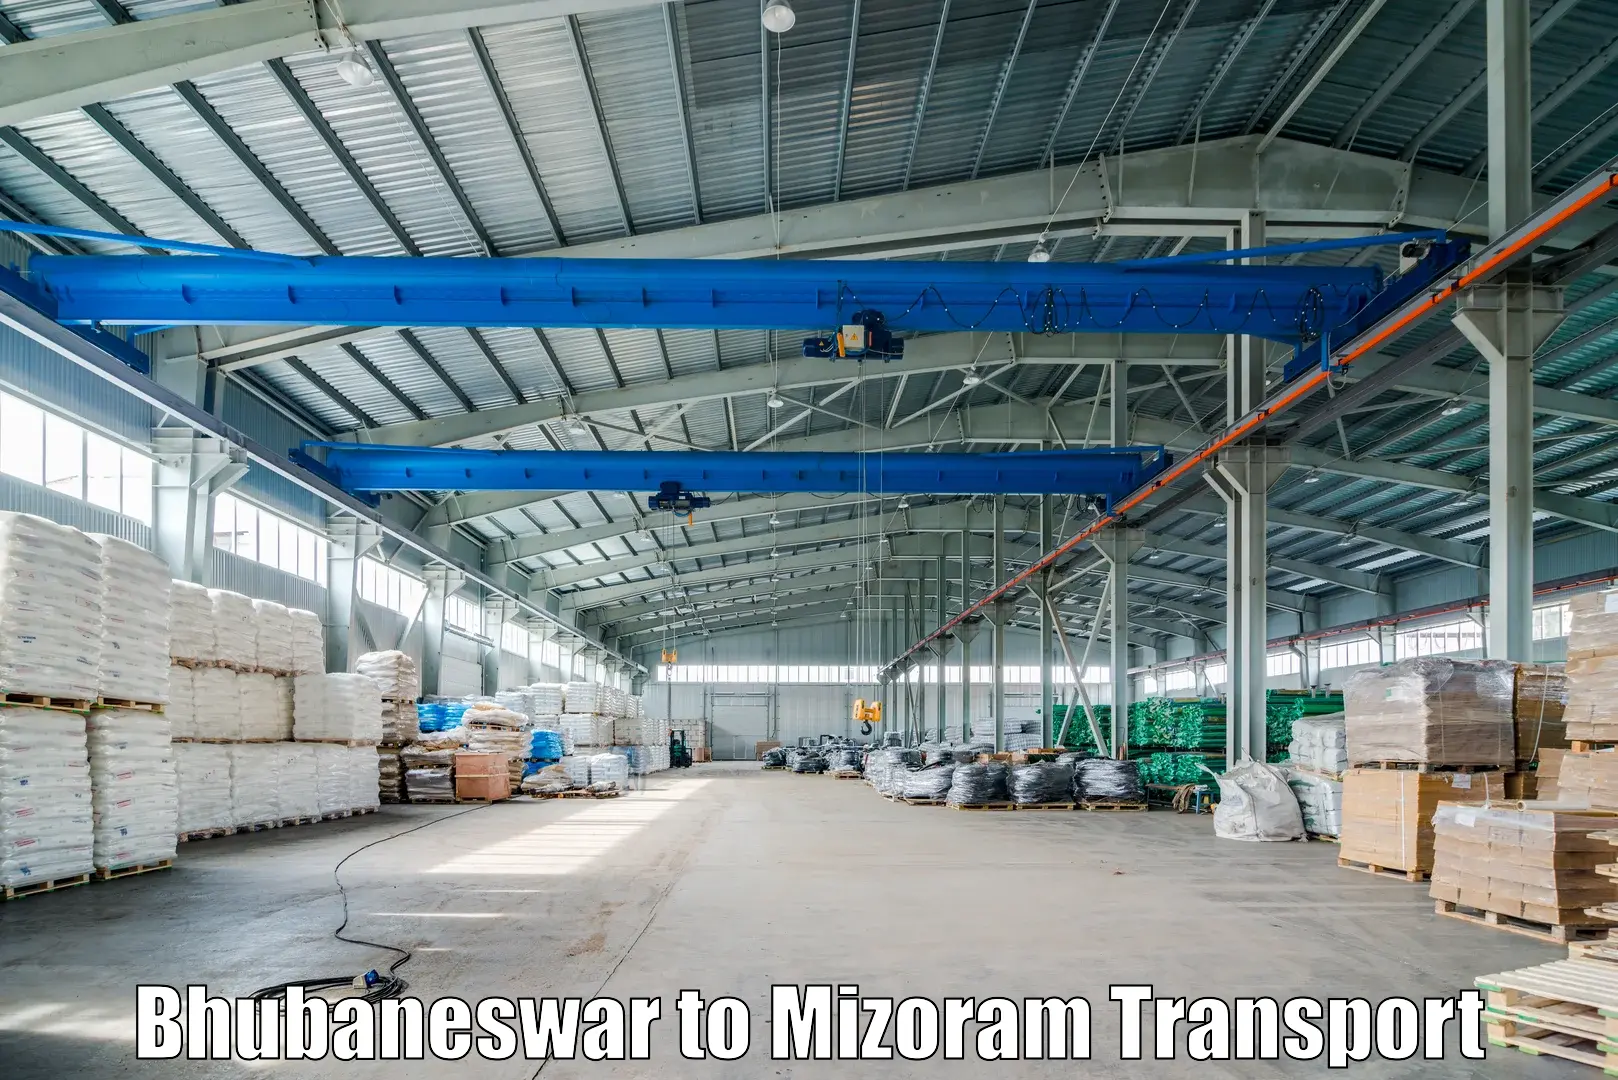 Furniture transport service Bhubaneswar to Darlawn